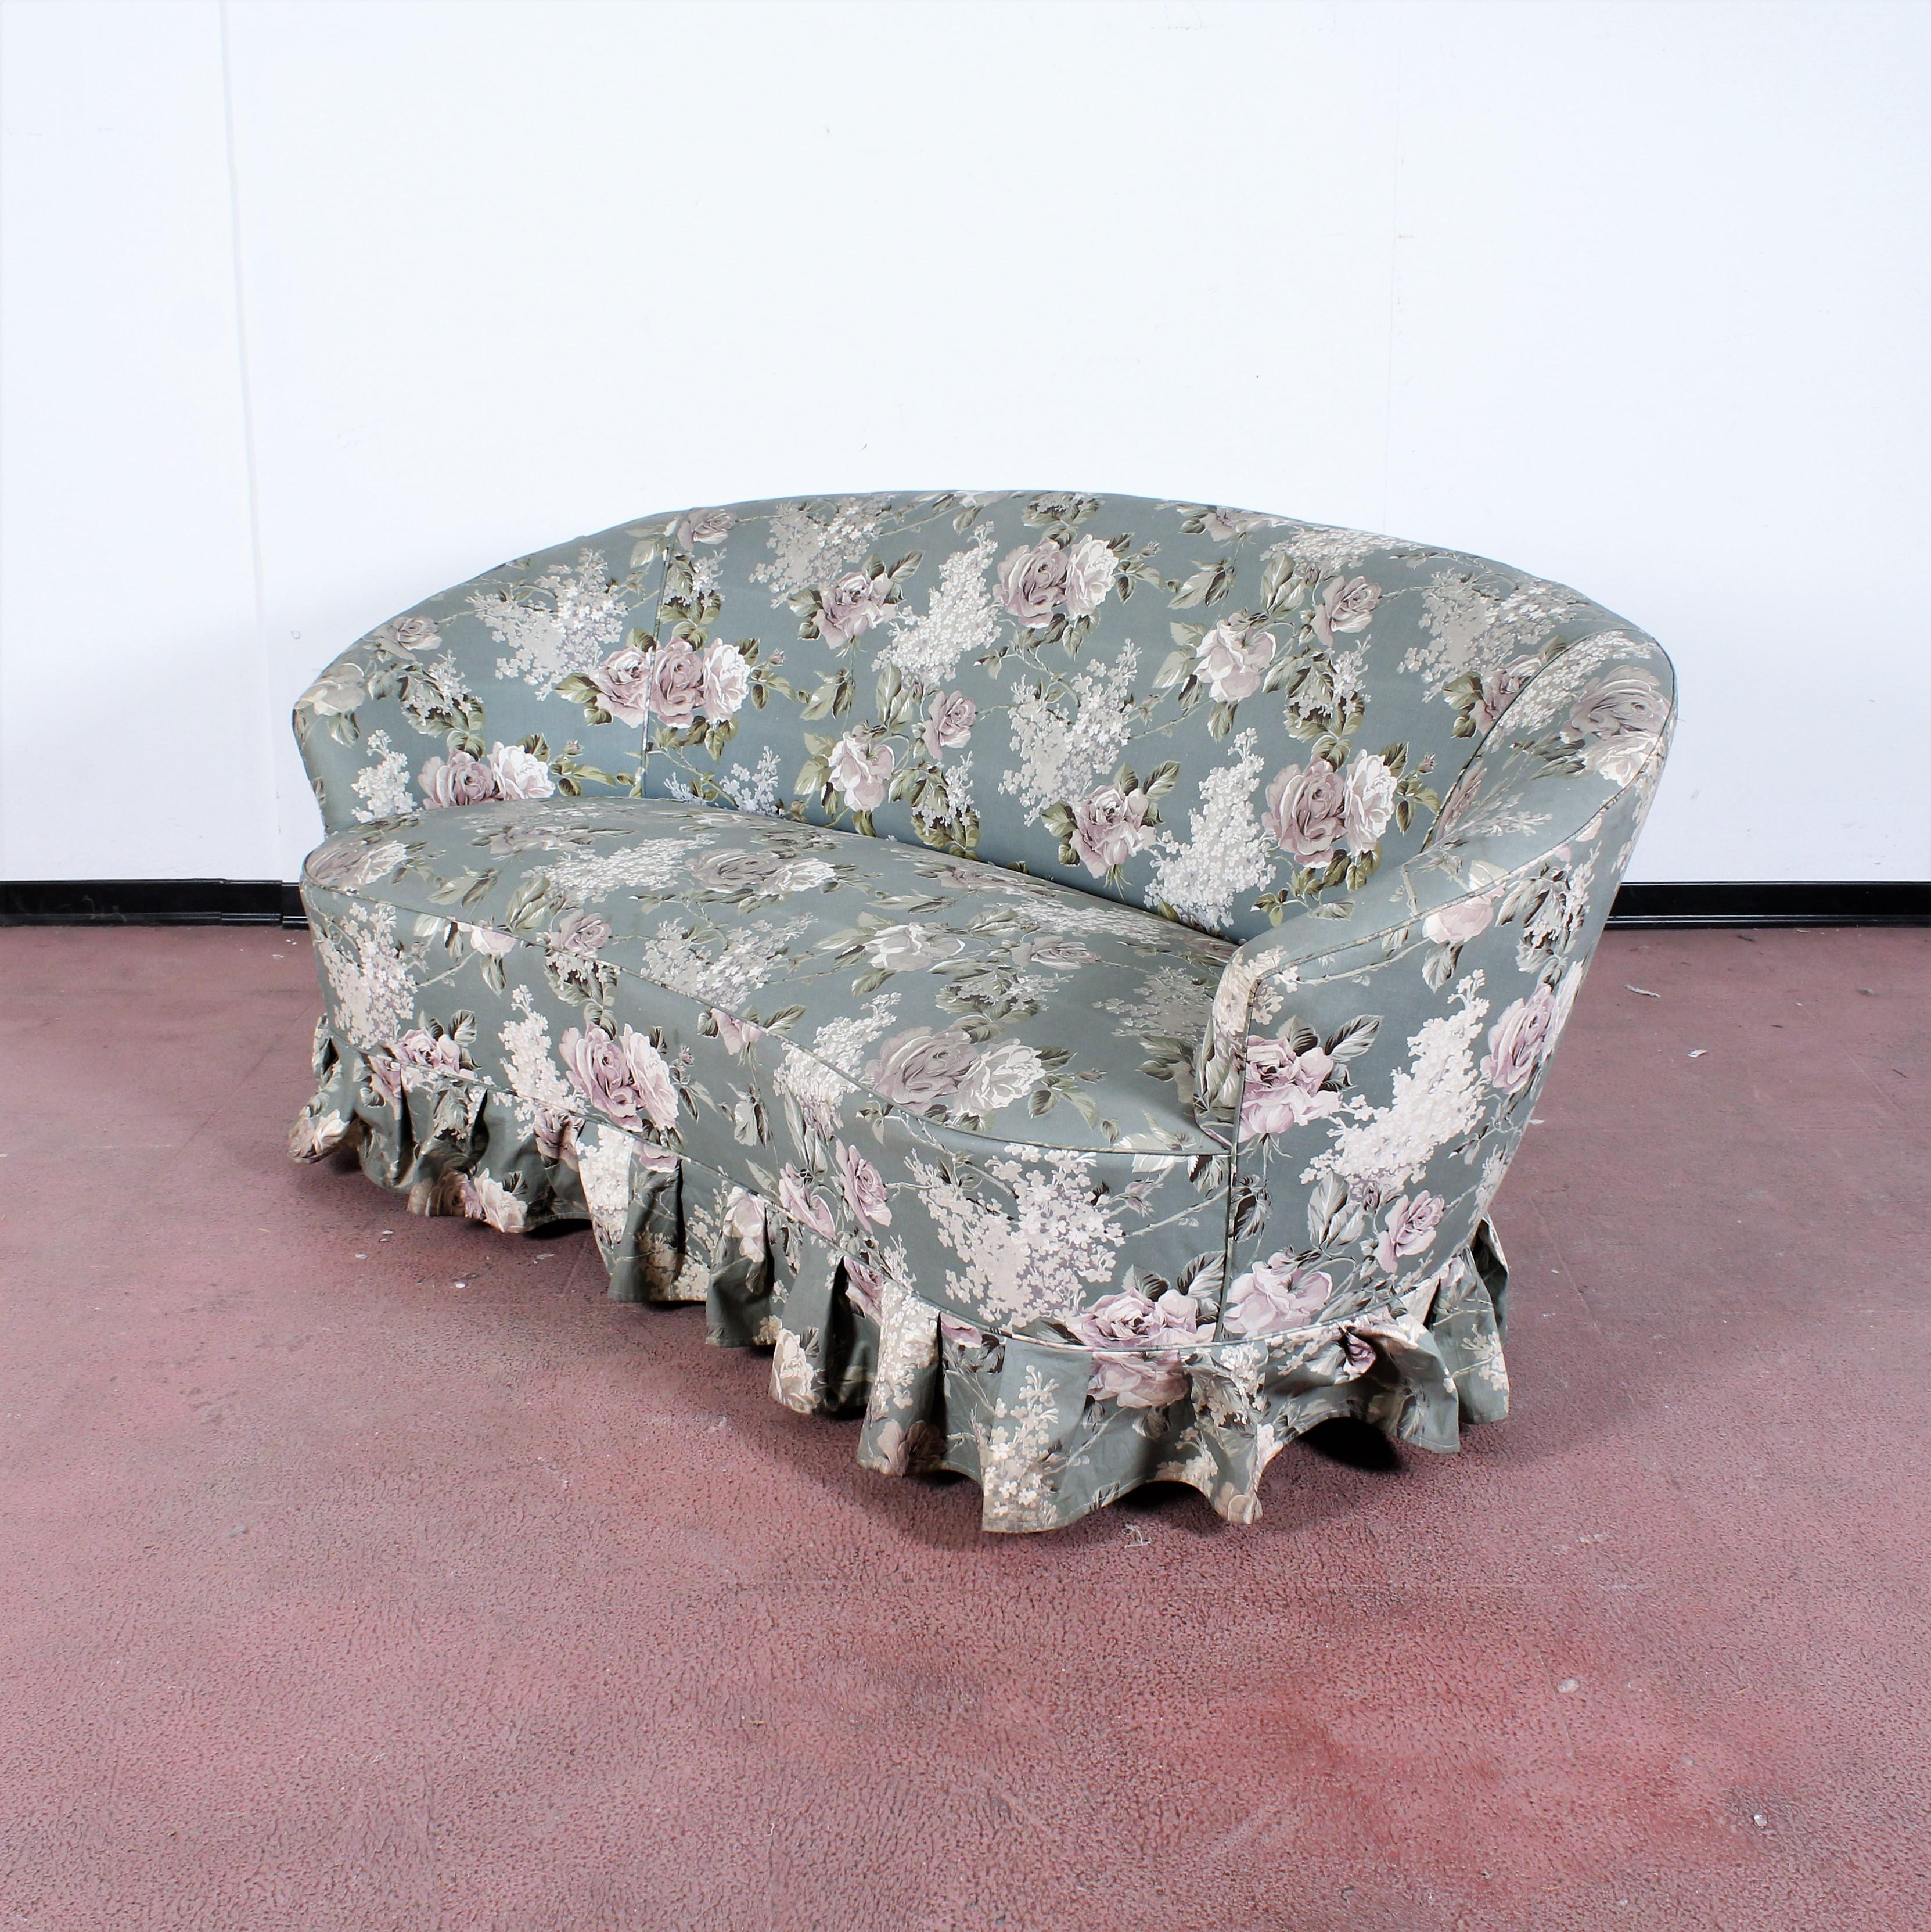 Zweisitziges Sofa aus Holz und Stoff mit floralen Motiven, im Stil von Gio Ponti, Serie 